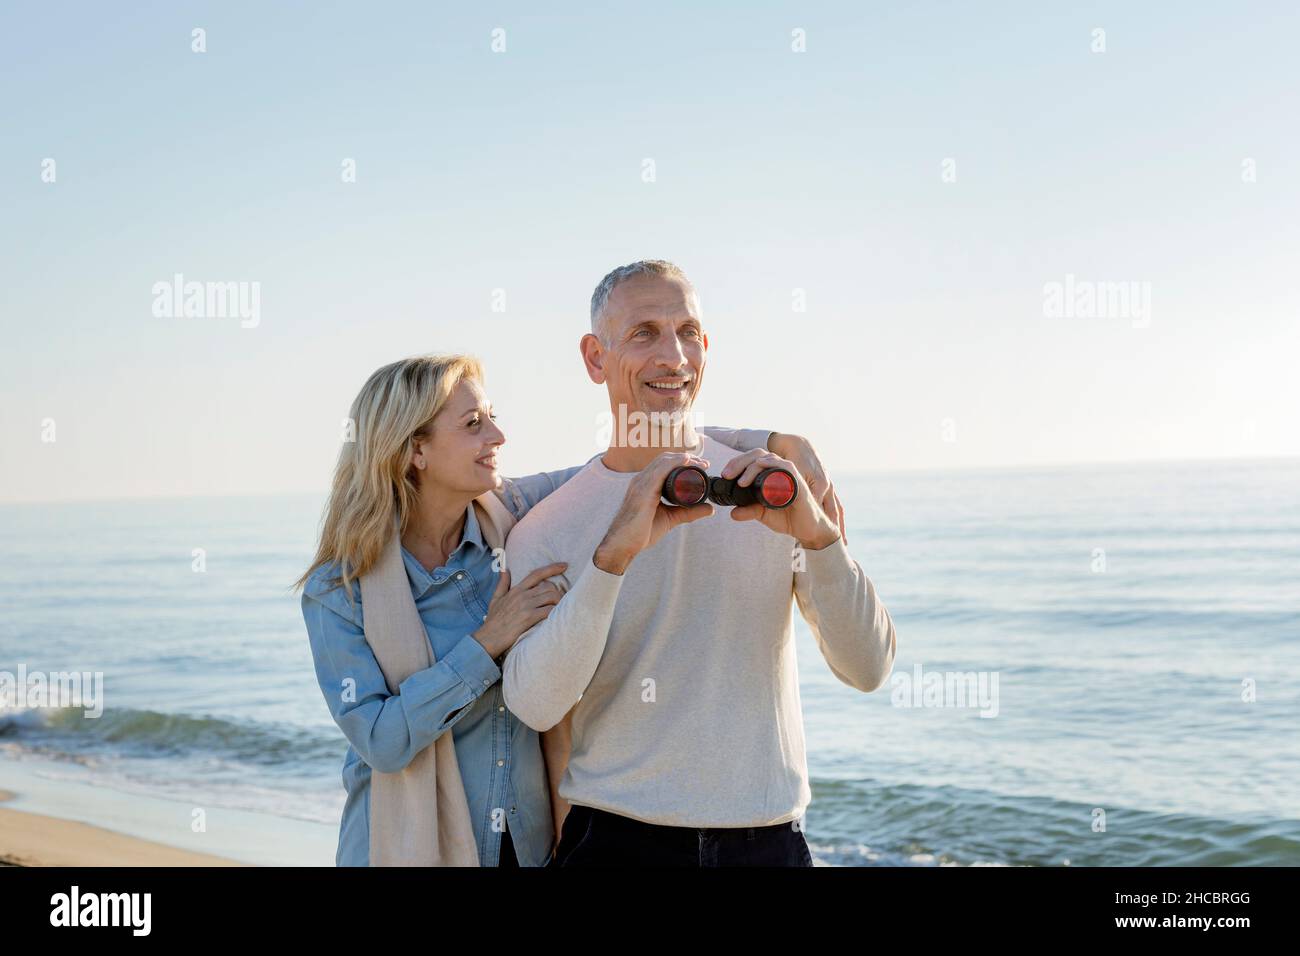 Lächelnde Frau mit Arm um den Mann, der ein Fernglas am Strand hält Stockfoto